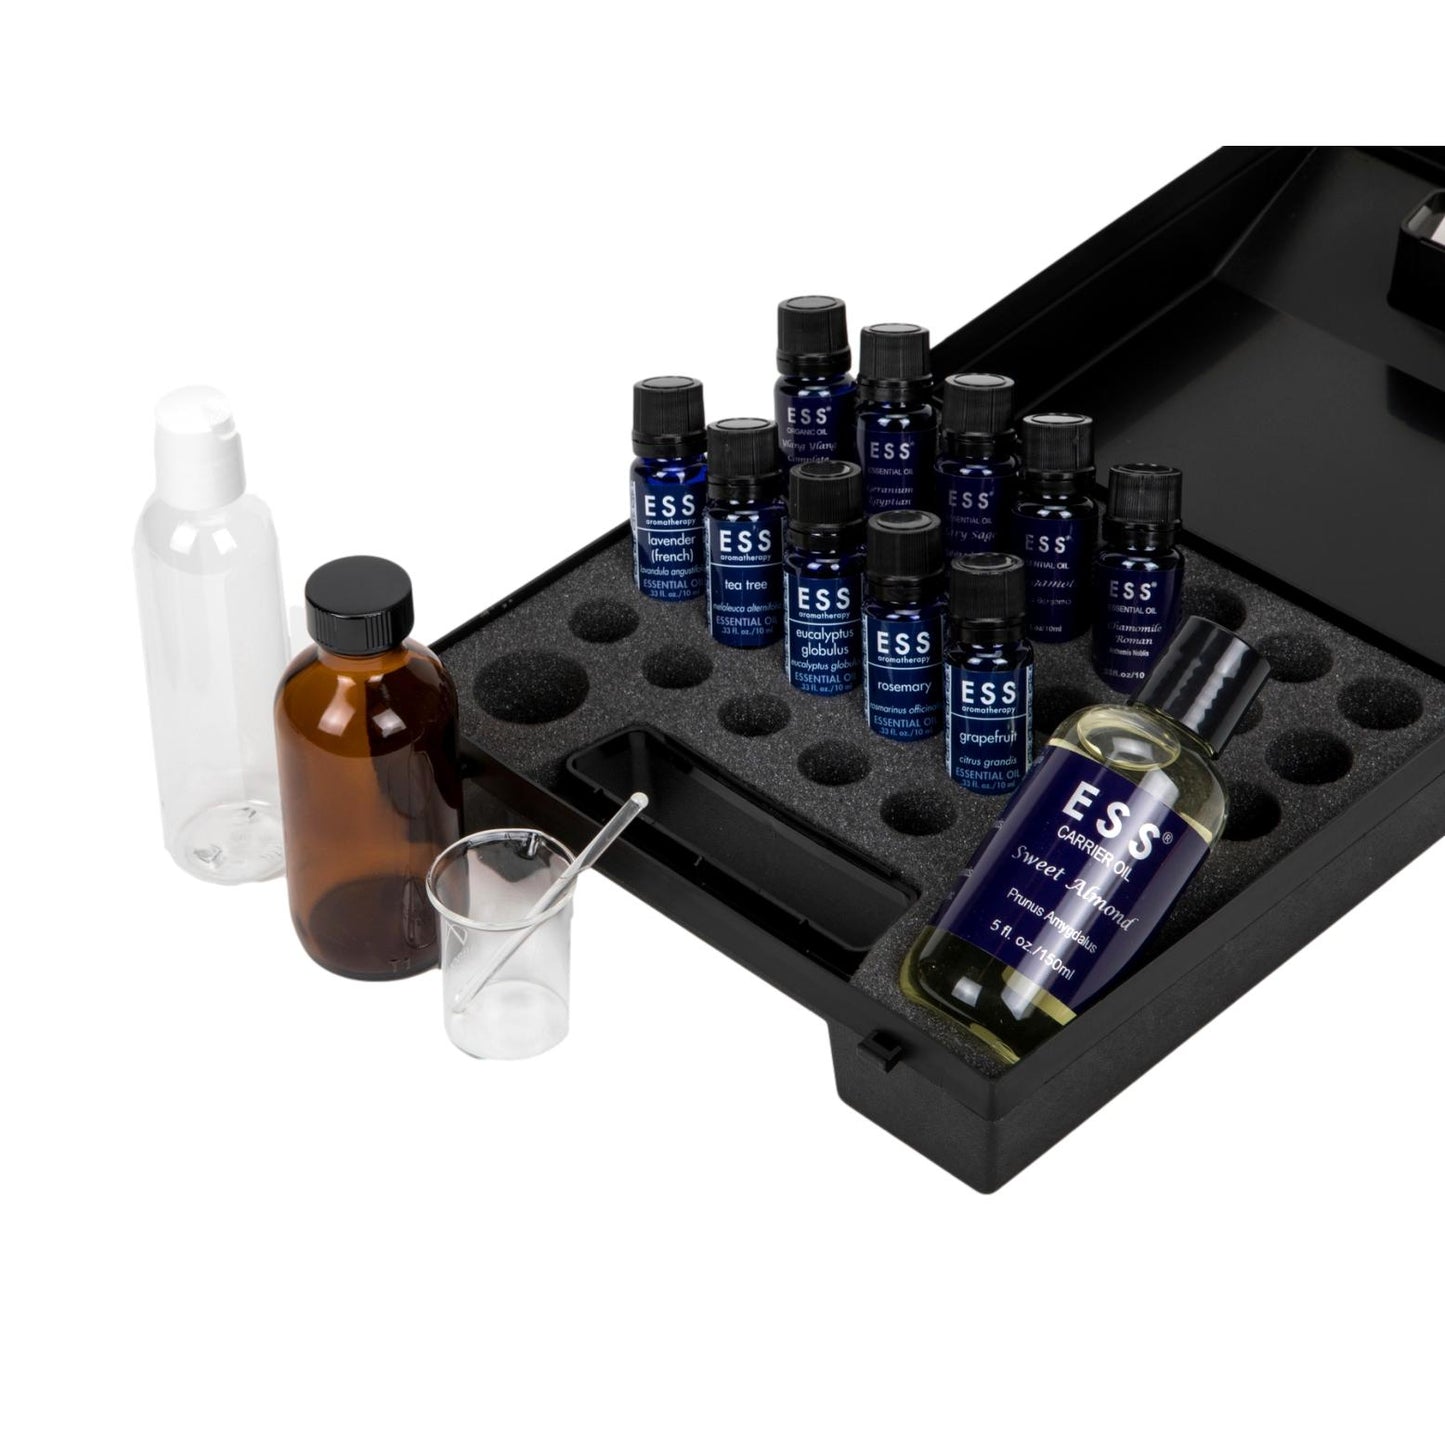 ESS Aromatherapy Starter Kit